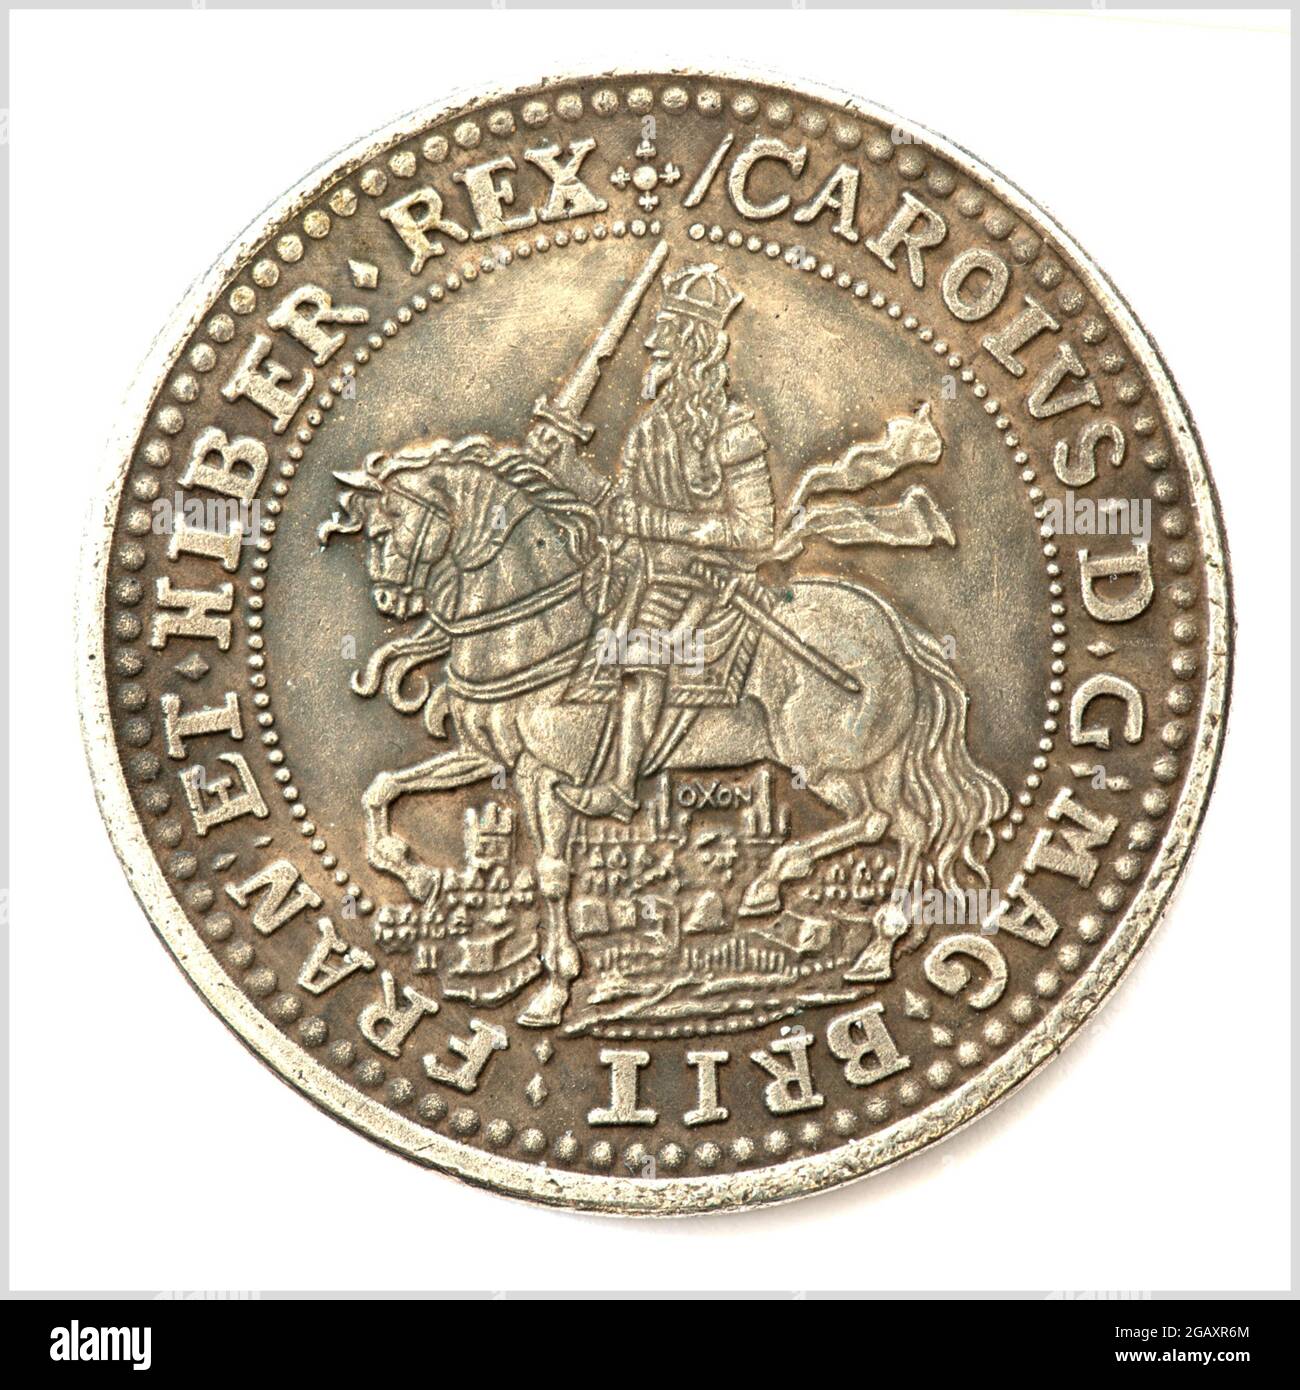 Charles I Crown - Oxford Crown oder Rawlins' Crown - Replik - mit Charles I auf dem Pferderücken und Blick auf Oxford. Stockfoto